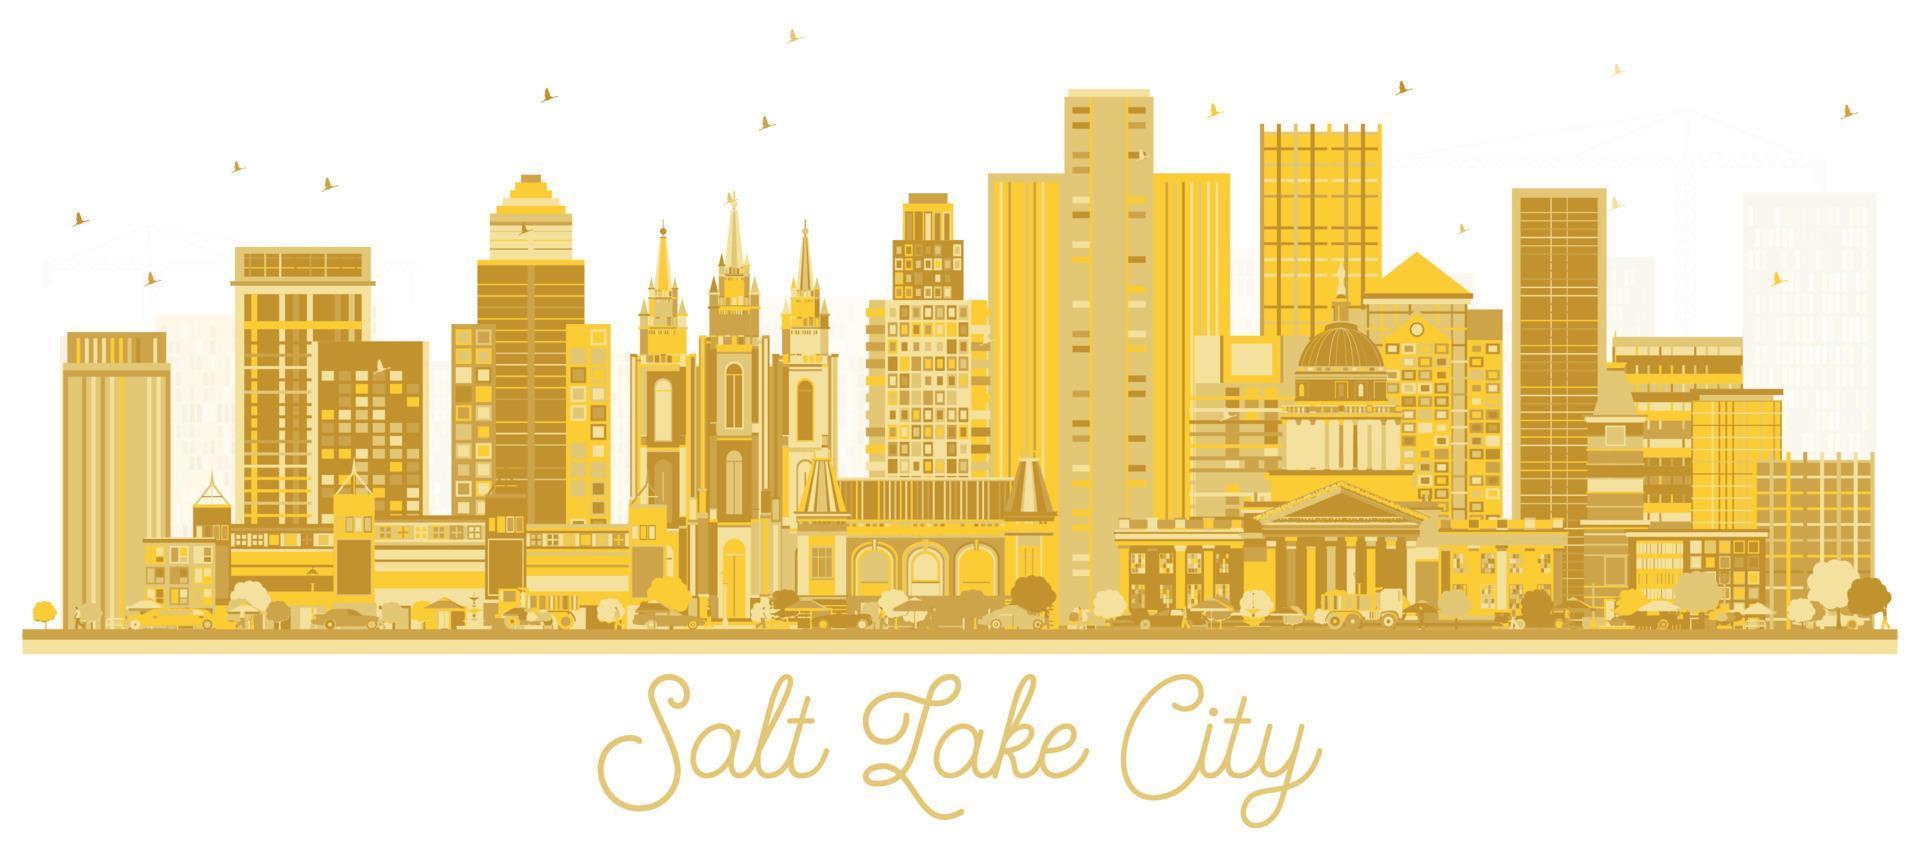 sale lago città Utah città orizzonte con d'oro edifici isolato su bianca. vettore